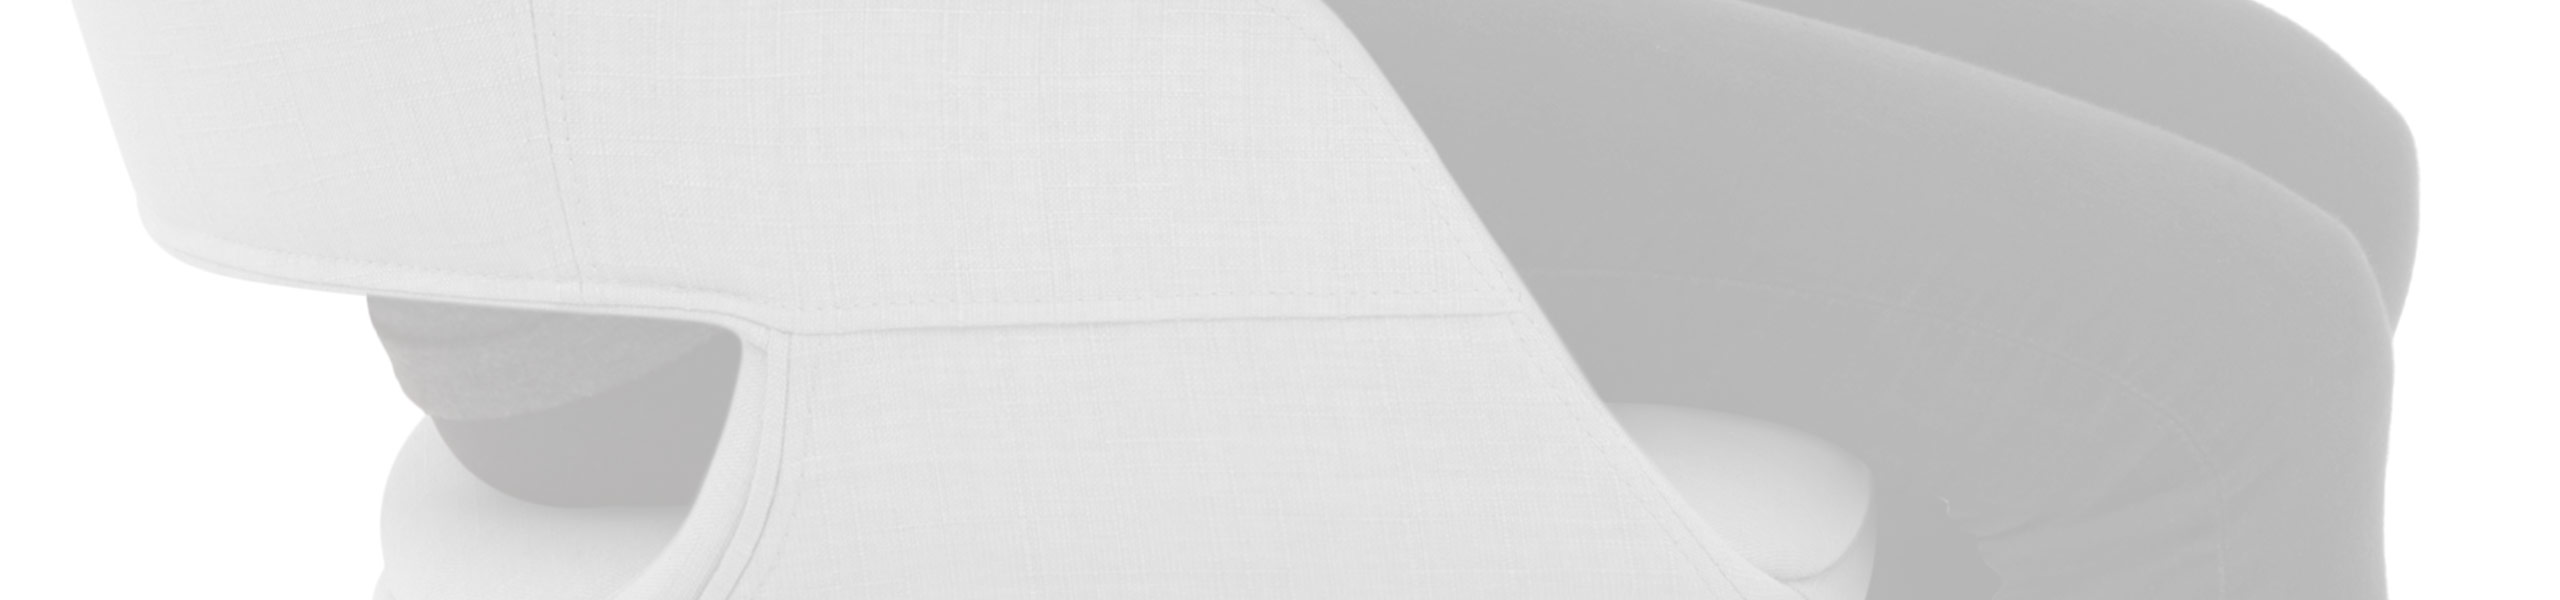 Nappa Bar Stool Grey Fabric Review Banner